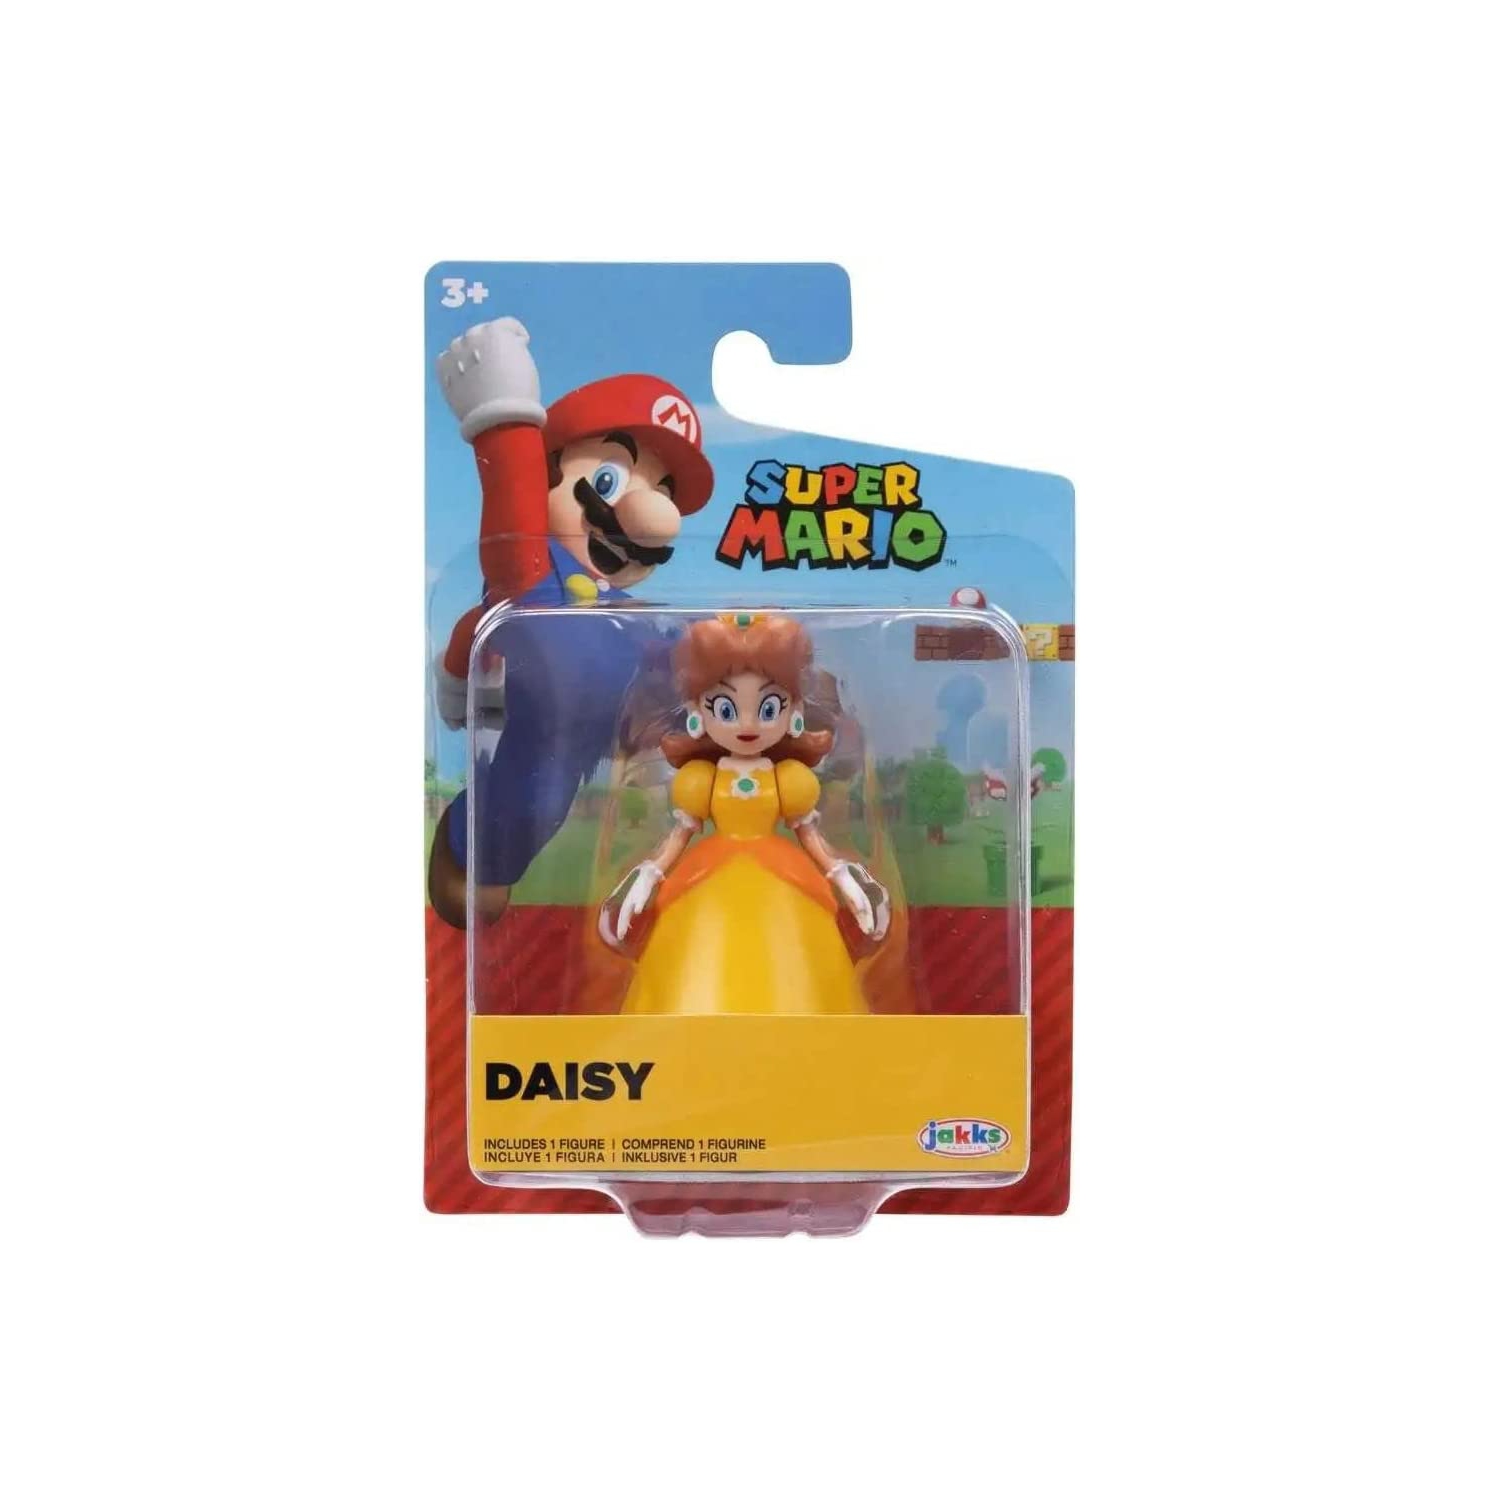 Super Mario World of Nintendo 2.5-inch Mini Figure Daisy